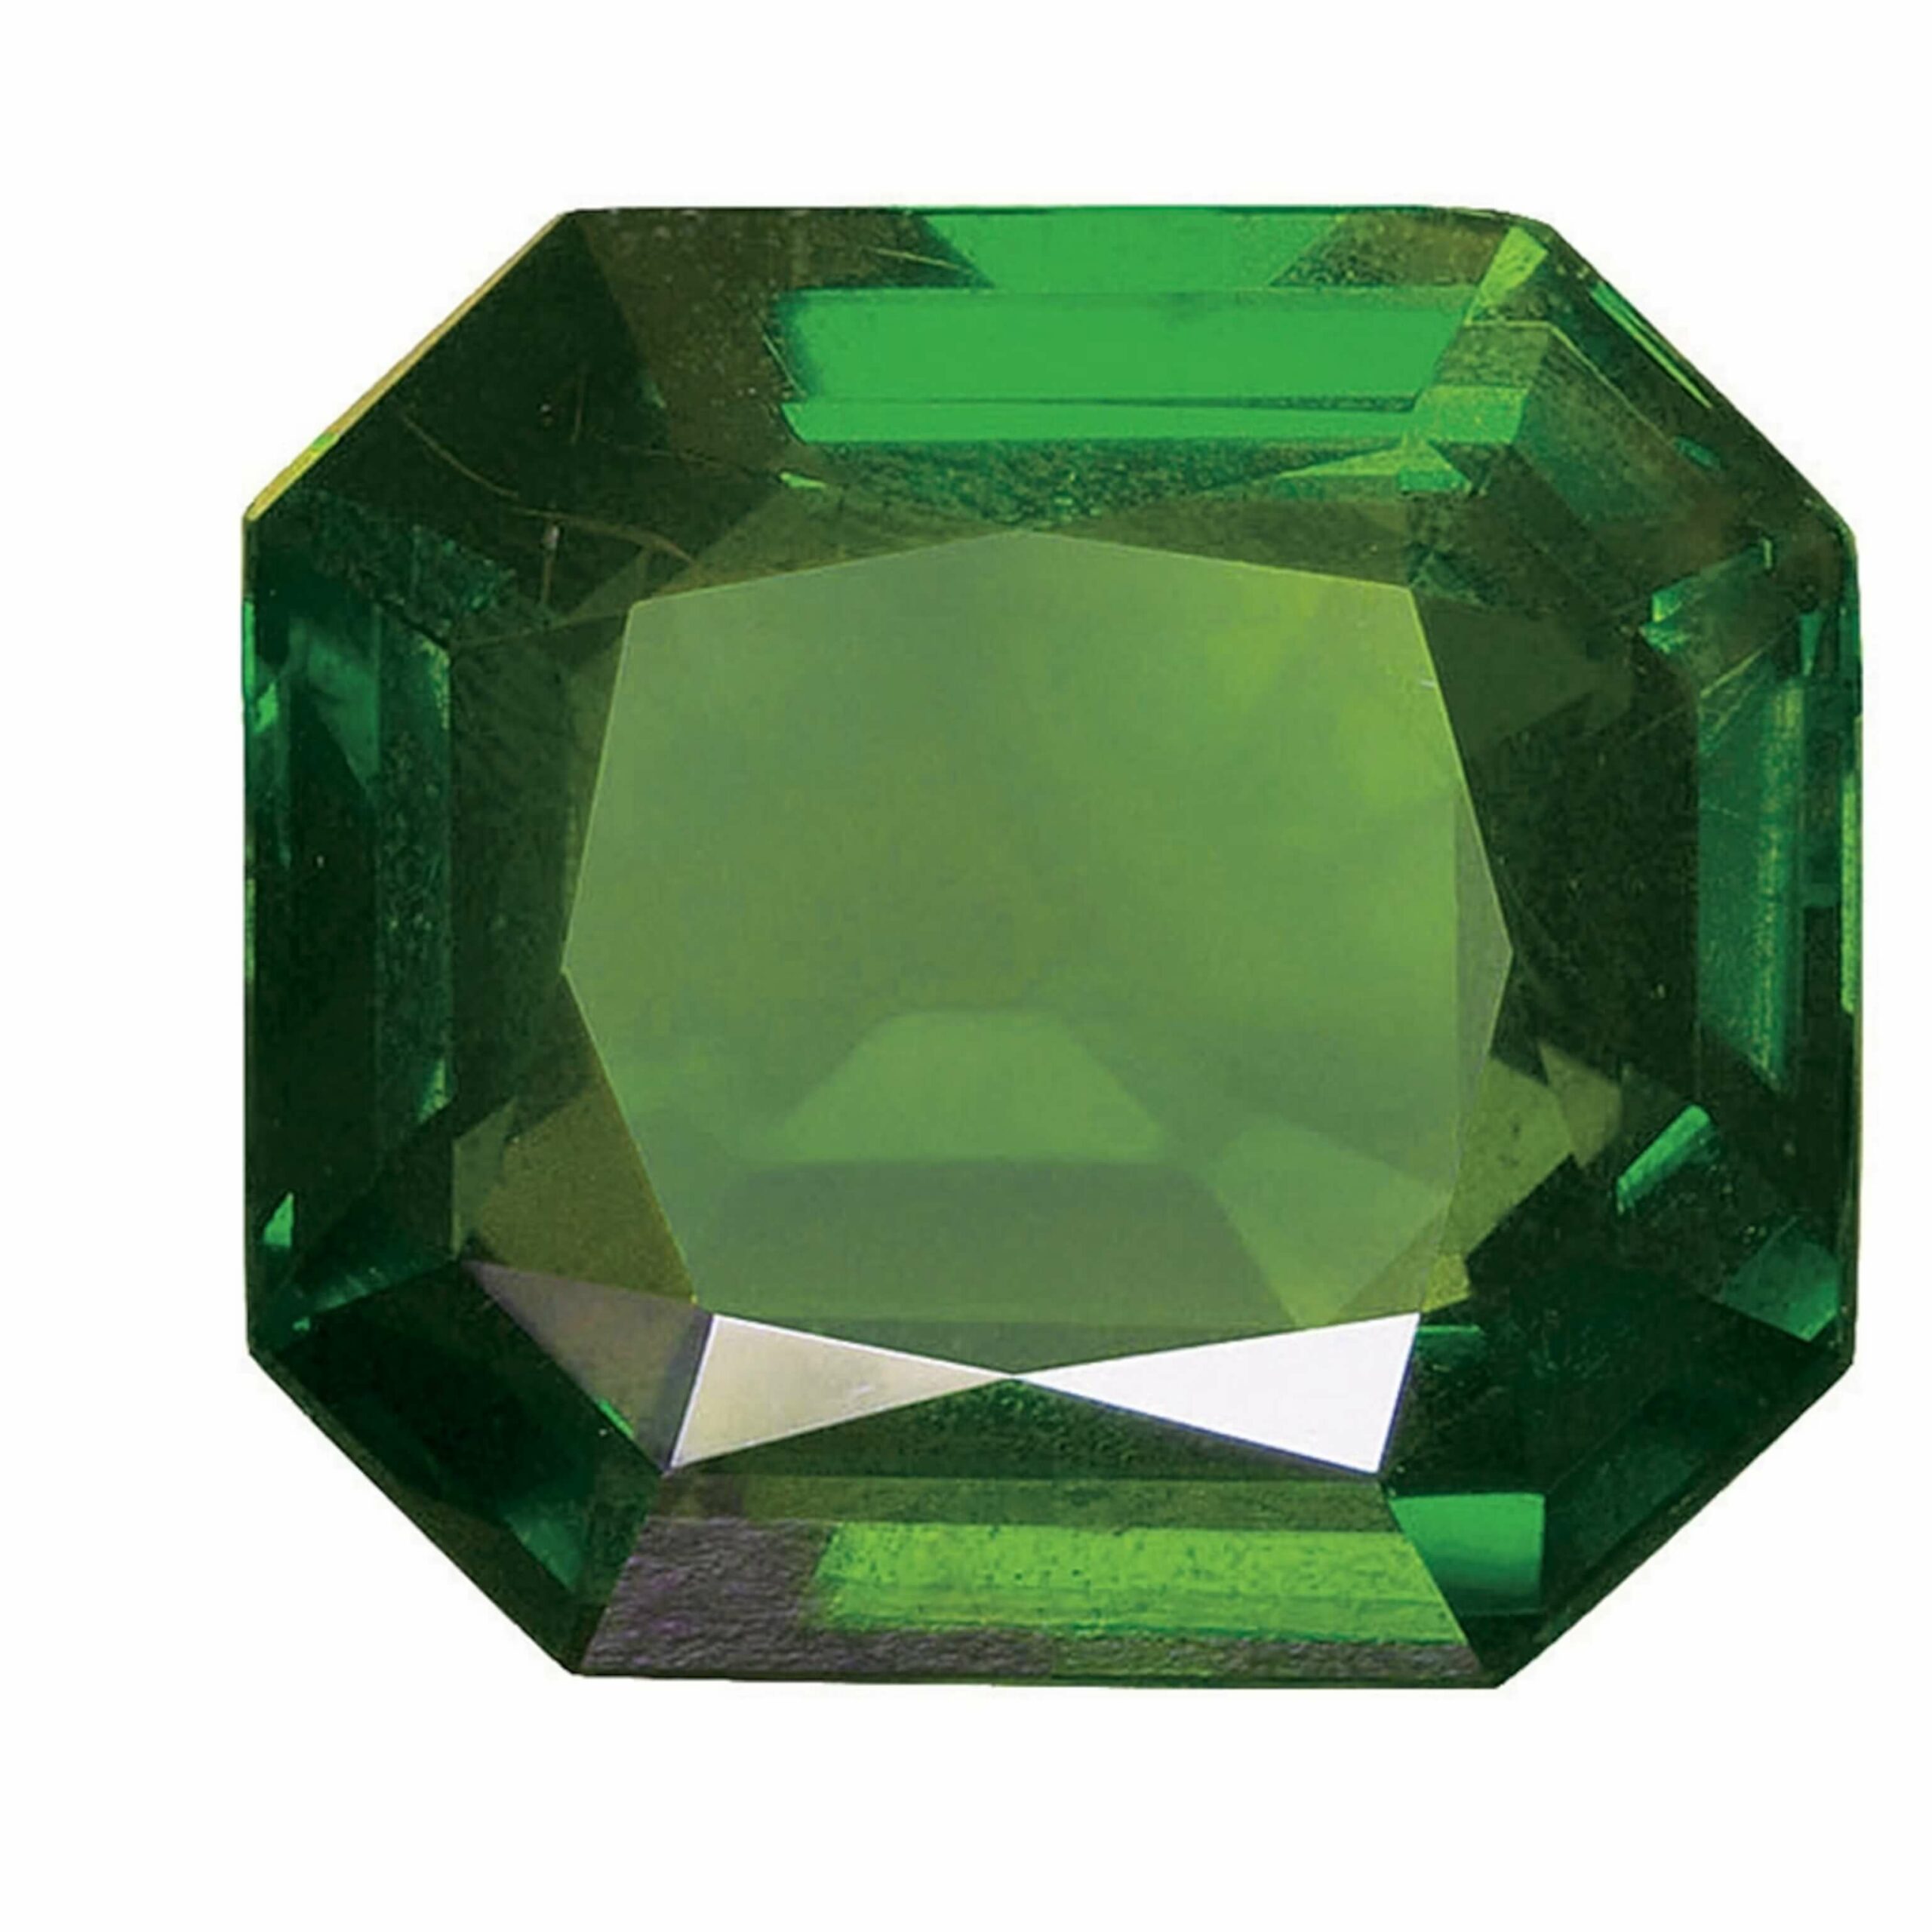 Các loại đá đính trên nhẫn: Emerald